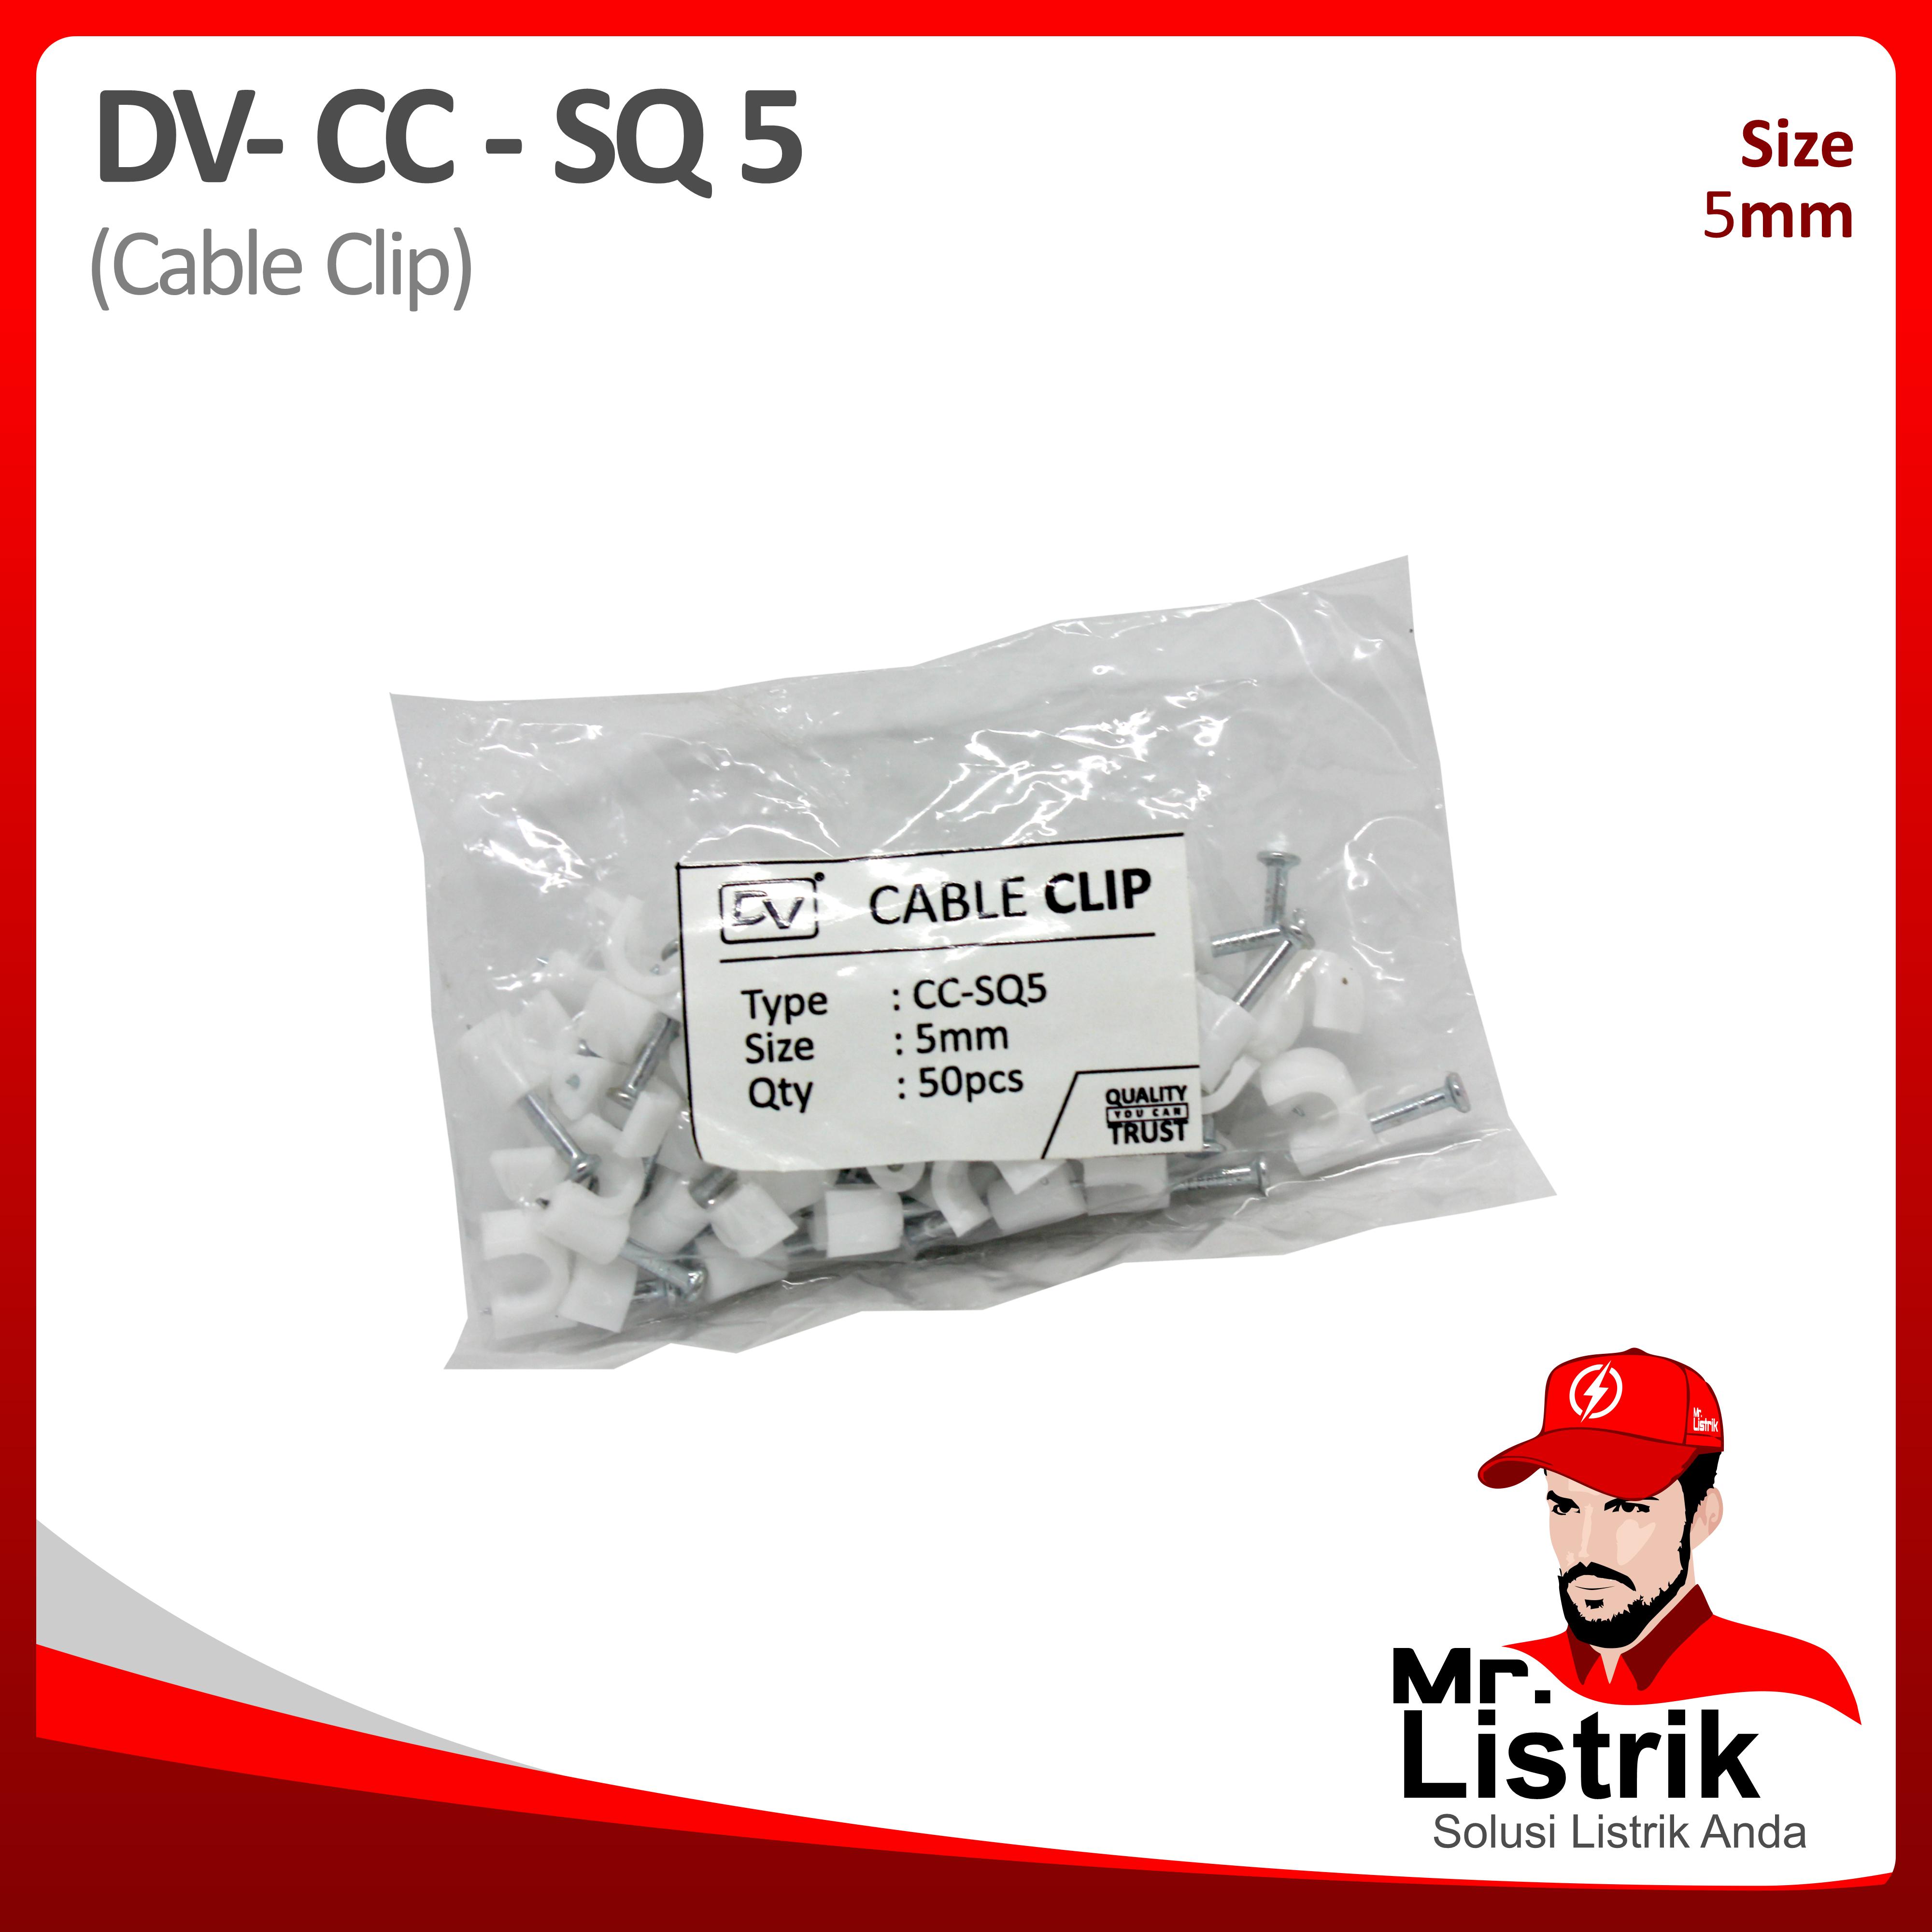 Cable Clip 5mm DV CC-SQ 5